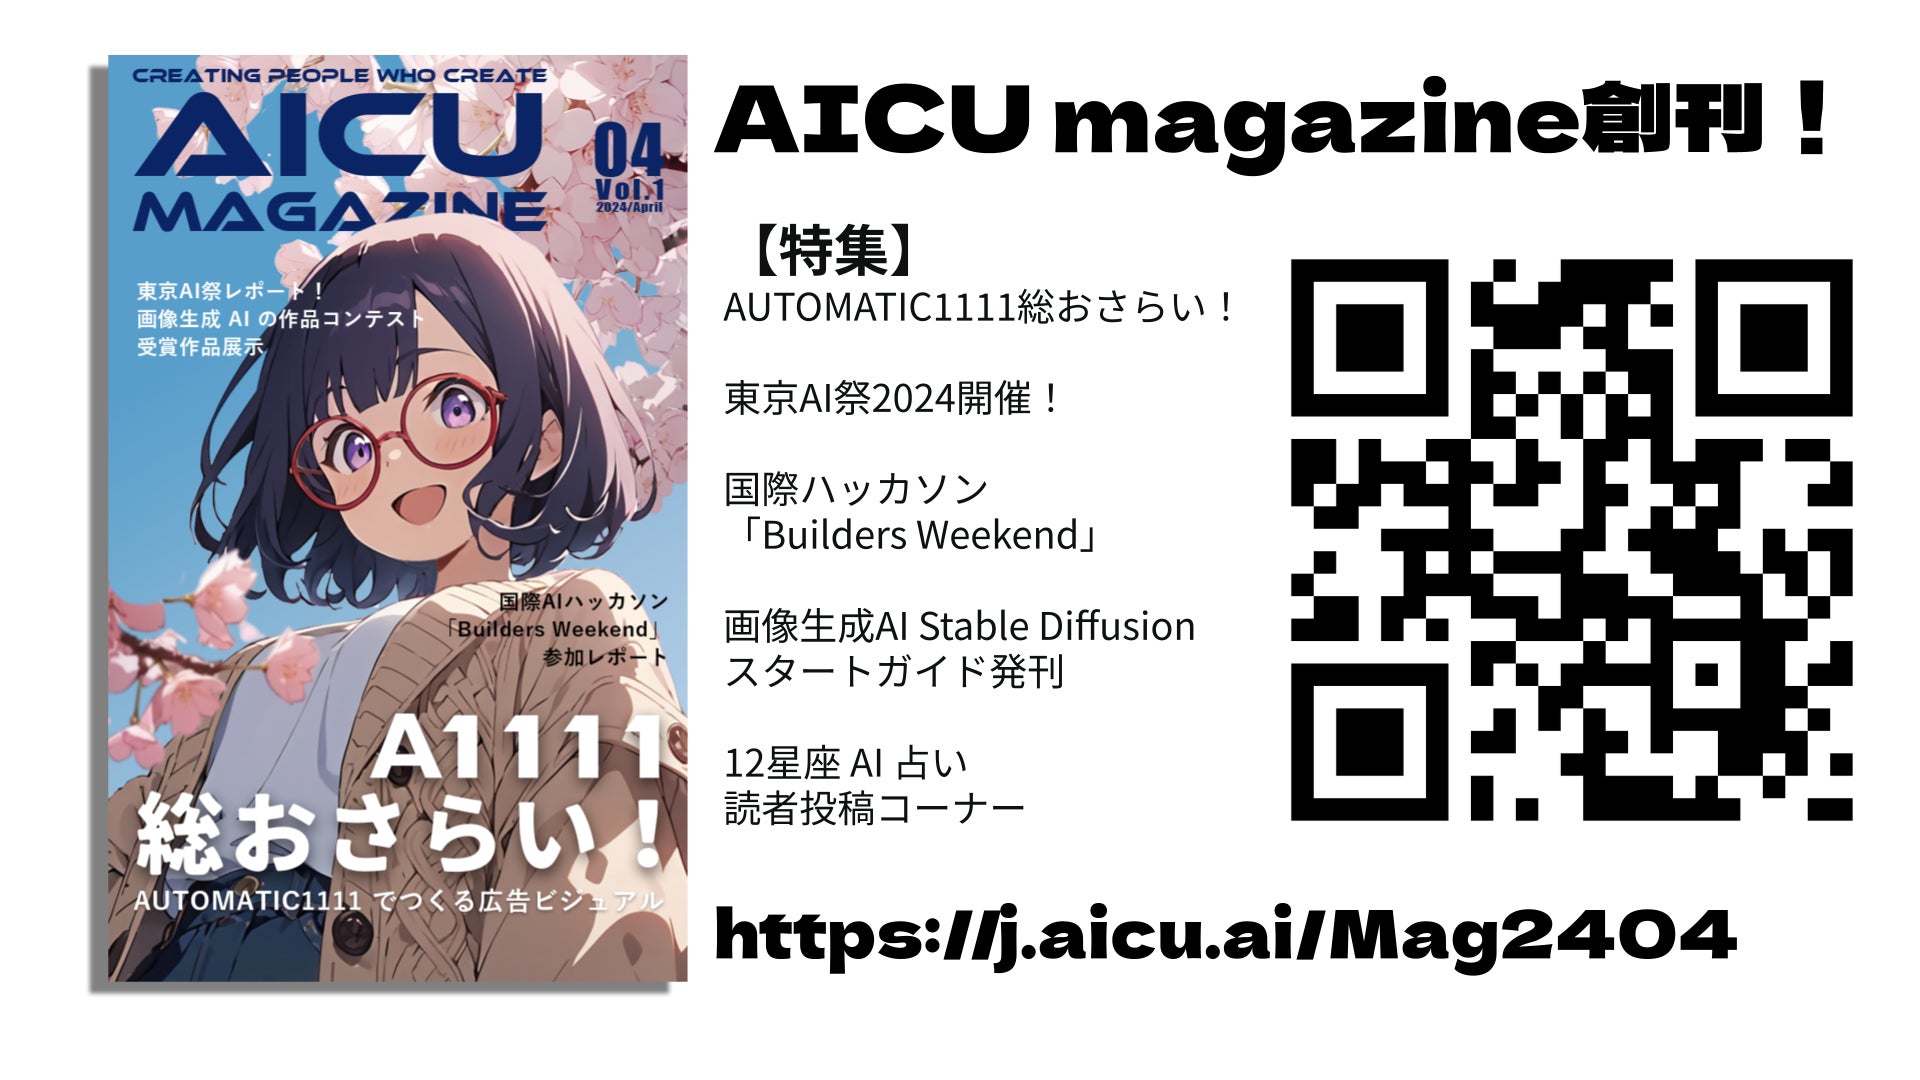 ハイセンスな中高生向け 最新AI 情報をお届けするニューメディア「AICU magazine」創刊！